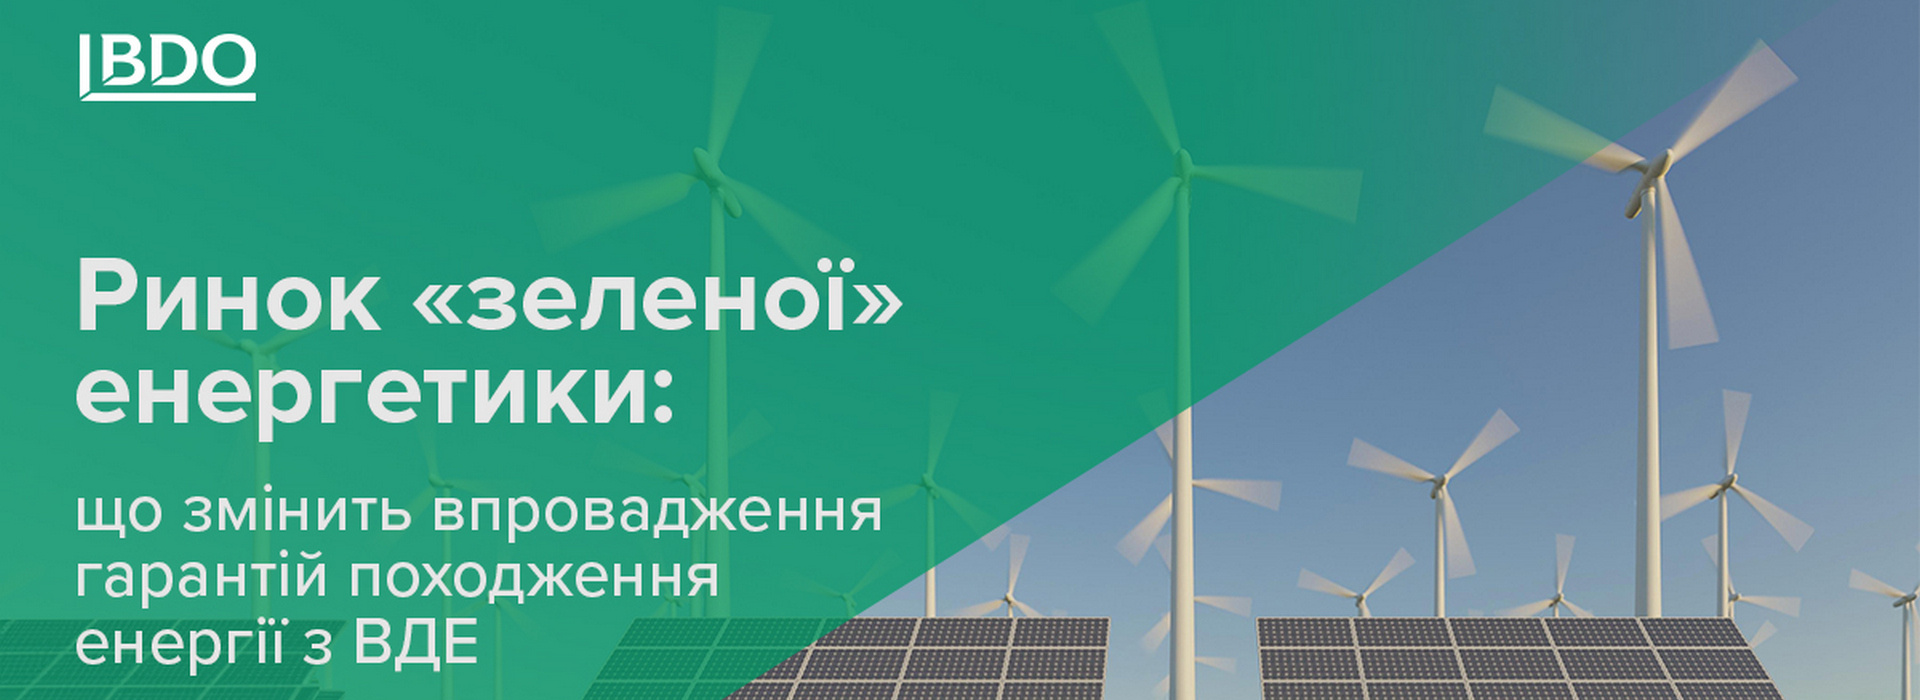 BDO в Україні – огляд законодавчих змін та перспектив розвитку ВДЕ на ринку «зеленої» енергетики